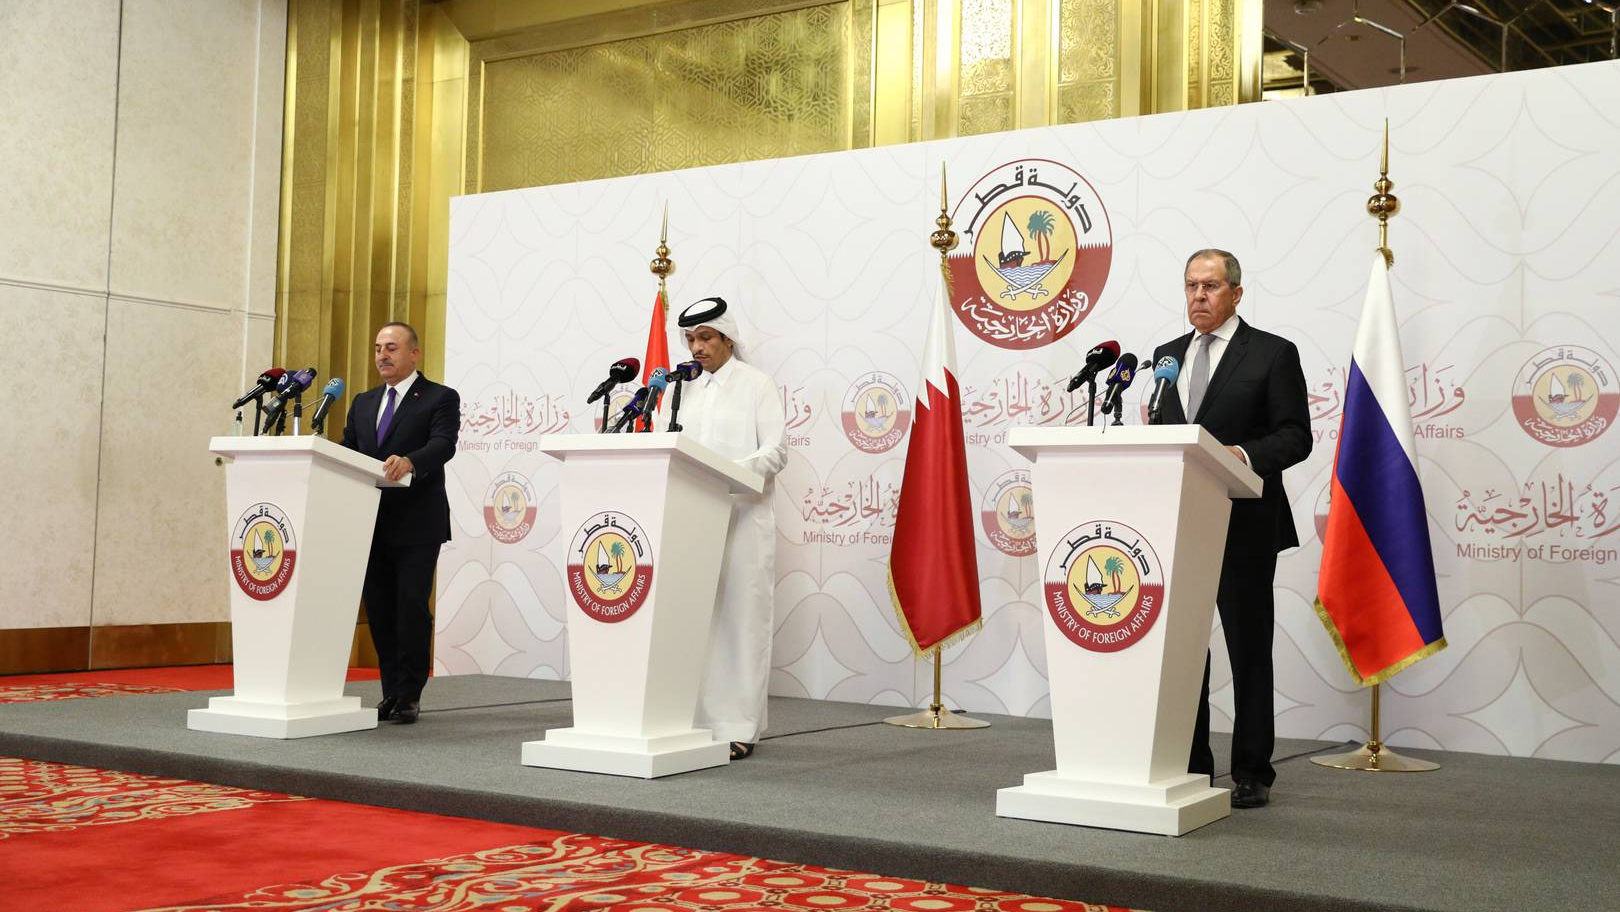 Пресс-конференция по итогам трехсторонней встречи министров иностранных дел России, Турции и Катара. Доха, 11 марта 2021 года